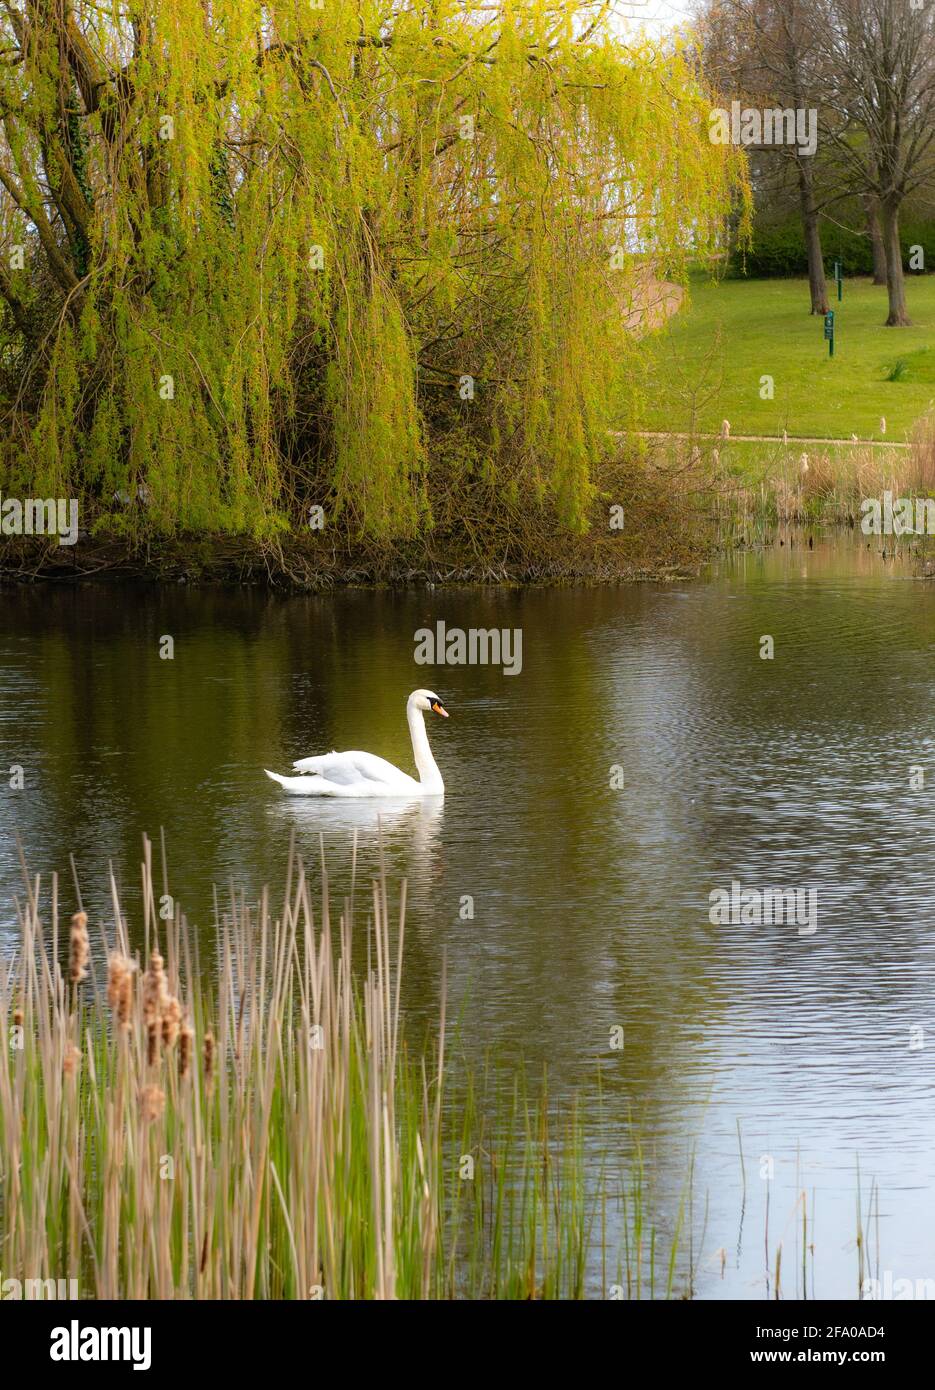 Cygne blanc muet nageant dans un étang de Campbell Park à Milton Keynes, avec un grand saule pleureur en arrière-plan. Banque D'Images